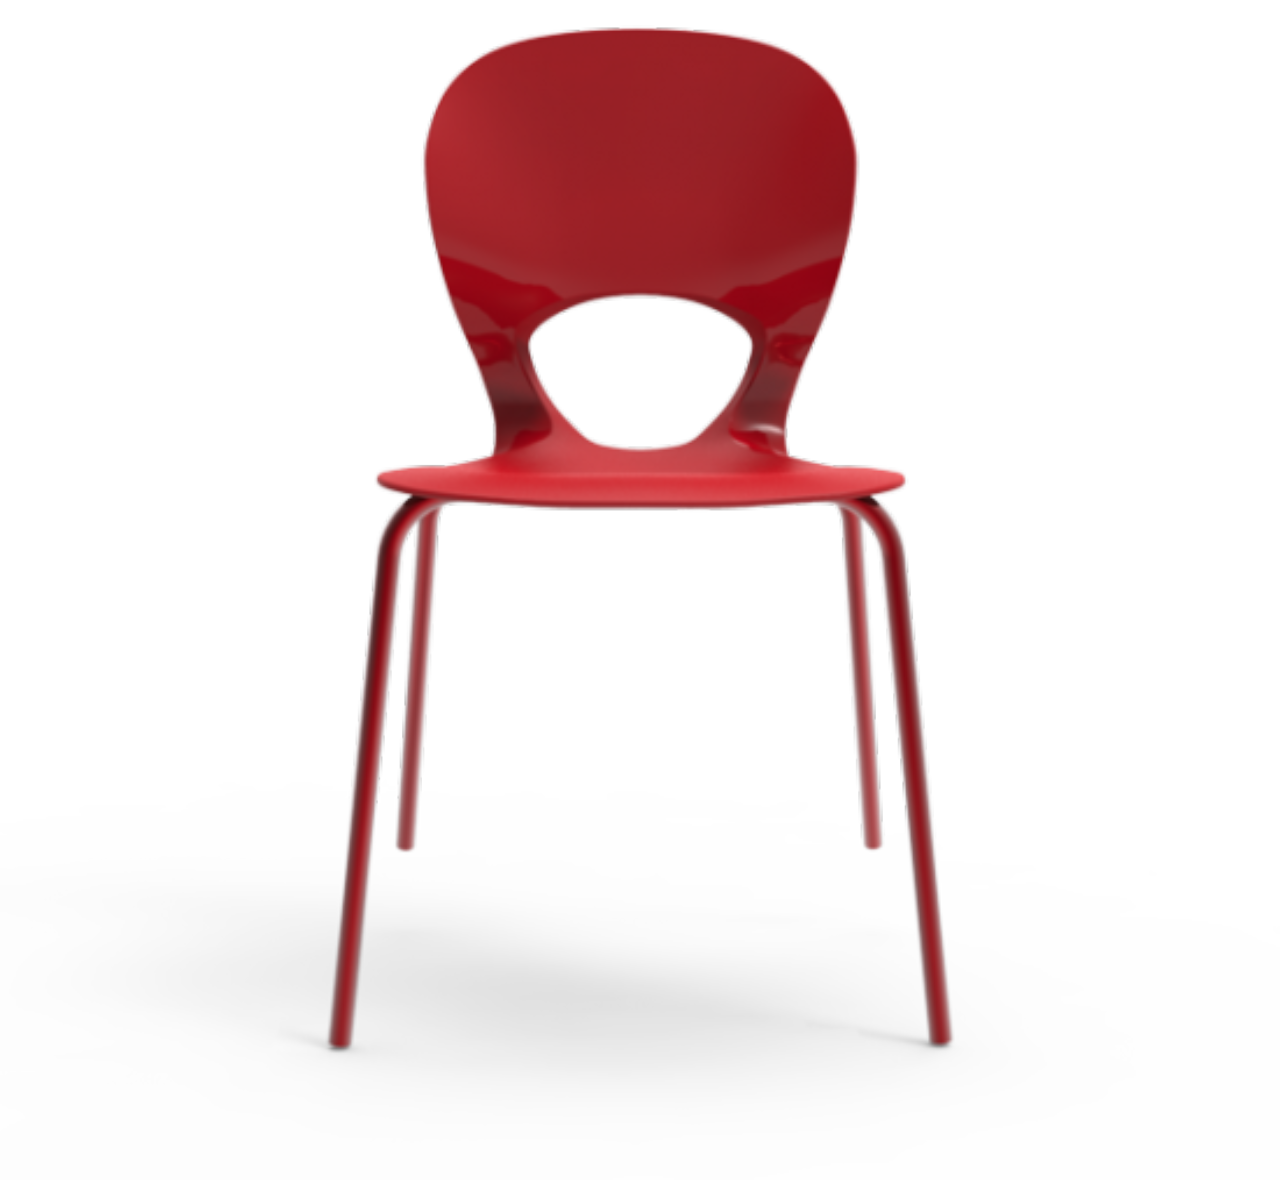 Cadeira Eclipse,  da I’M IN, de polipropileno, com encosto brilhante e assento fosco, traz um movimento visual. Foto: Trevisan Concept/Divulgação